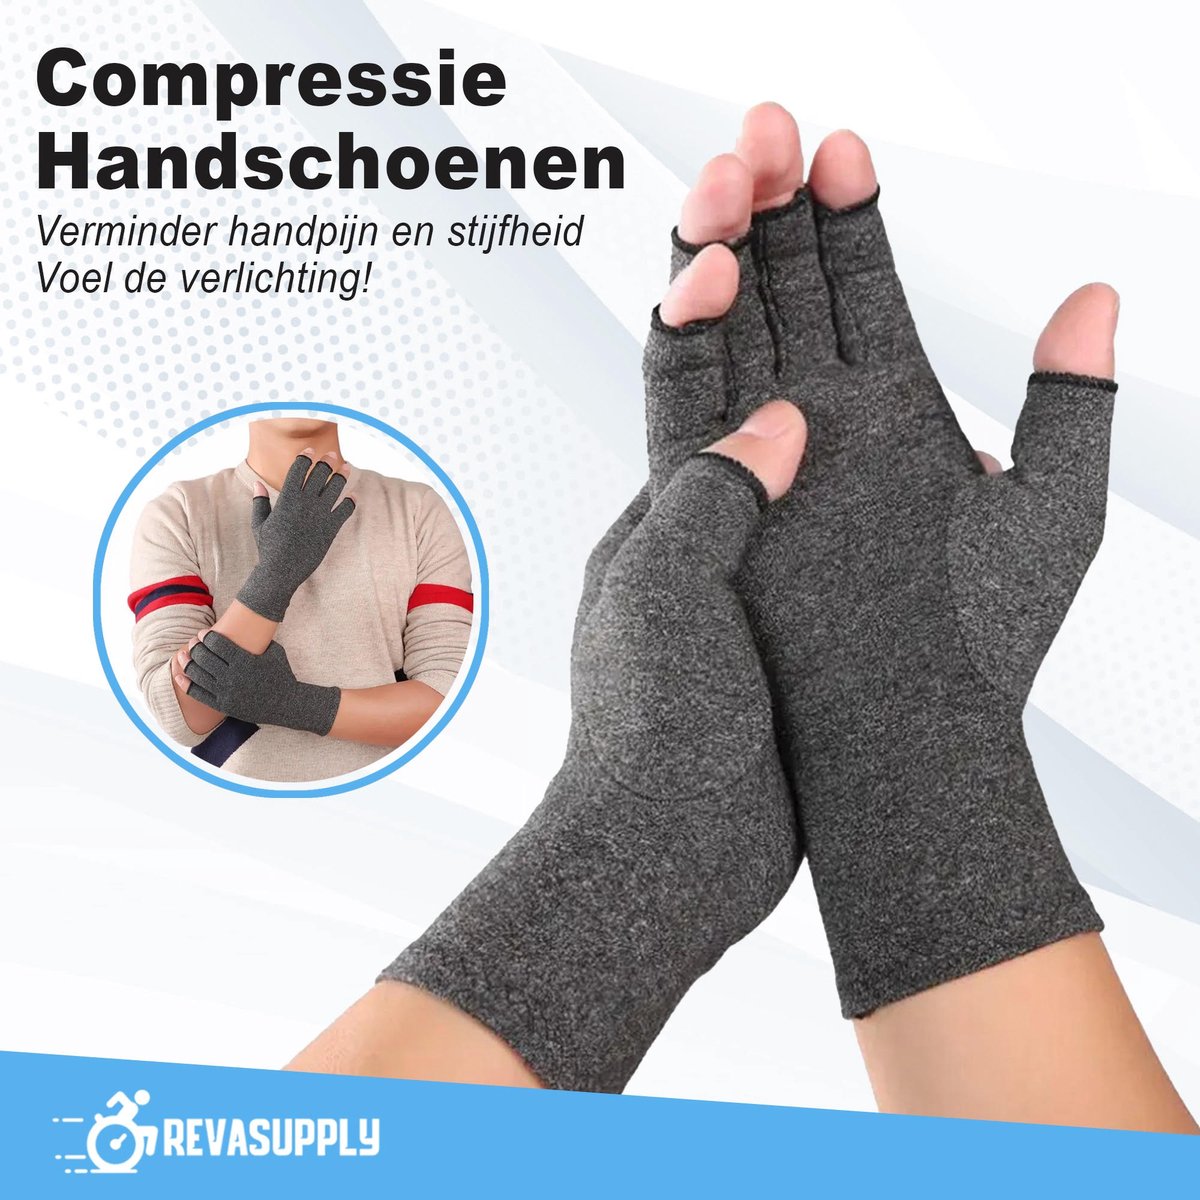 Artritis handschoenen - Maat M - Compressie handschoenen - Anti-slip - Reuma - Artrose - Carpaal tunnel syndroom - Grijs -